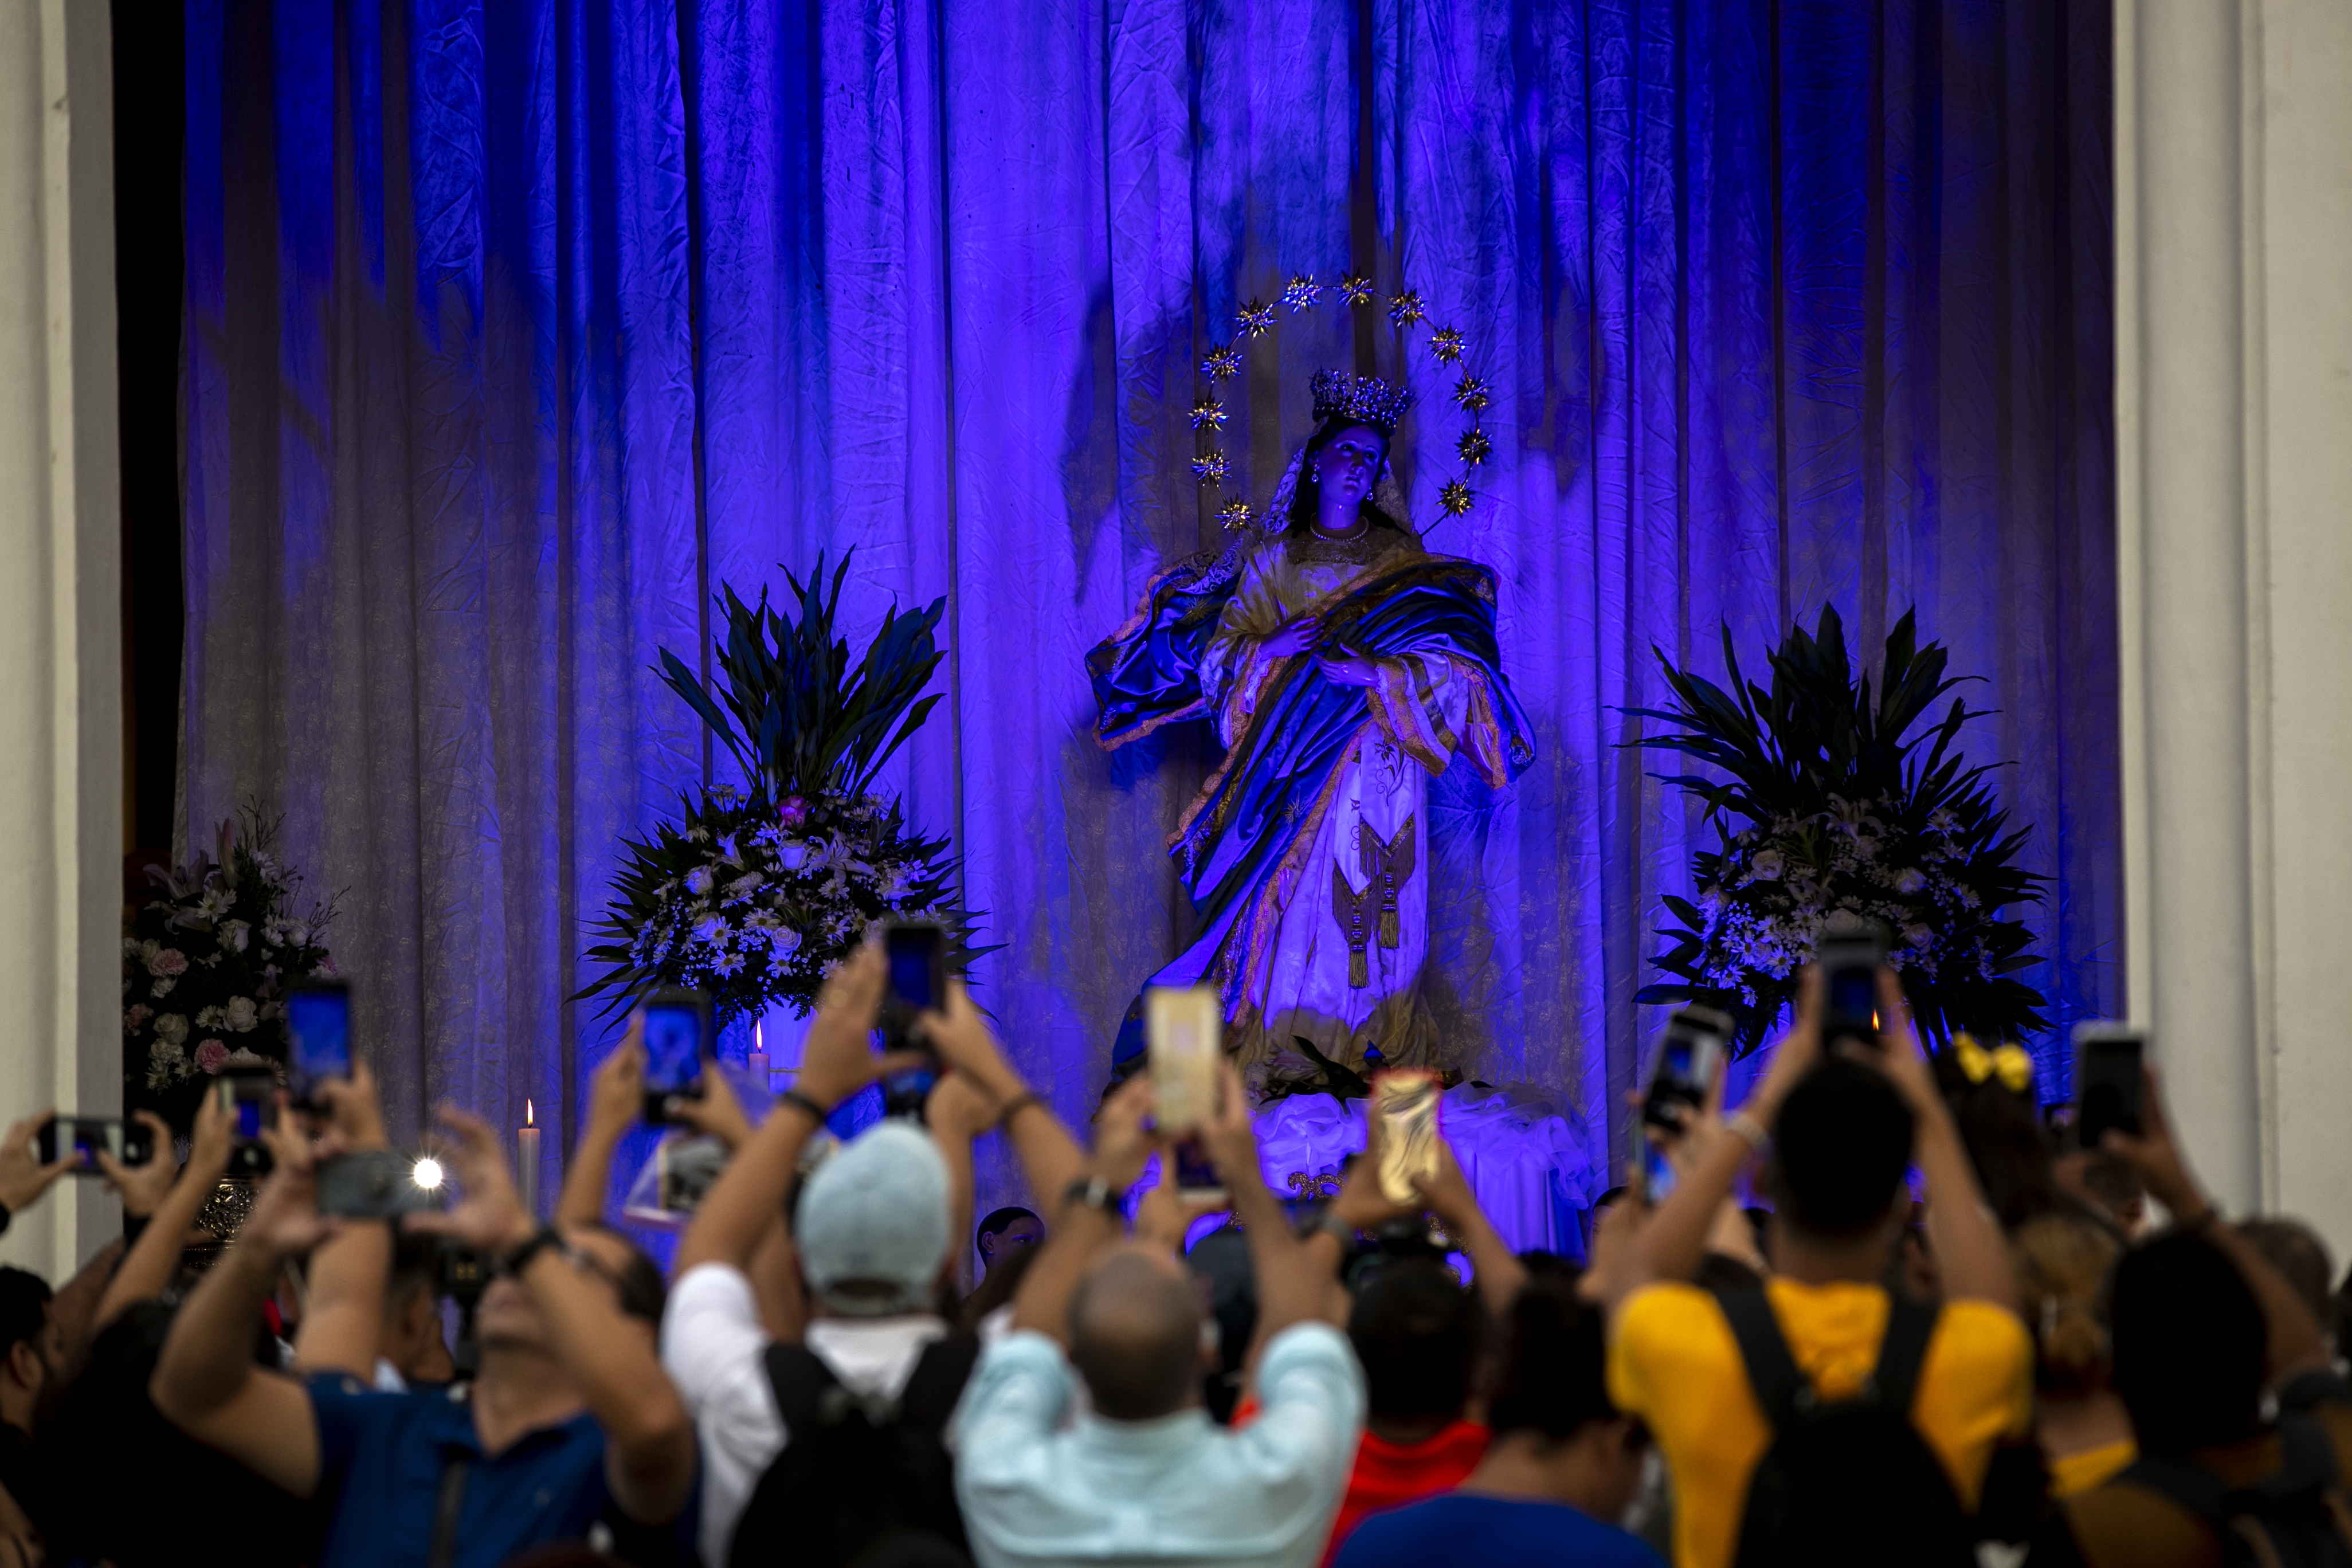 Feligreses le toman fotos a una imagen de la Virgen de la Asunción, durante la celebración de la Gritería Chiquita en León, mientras el gobierno de Daniel Ortega sigue arremetiendo contra sacerdotes. (Foto Prensa Libre: EFE)